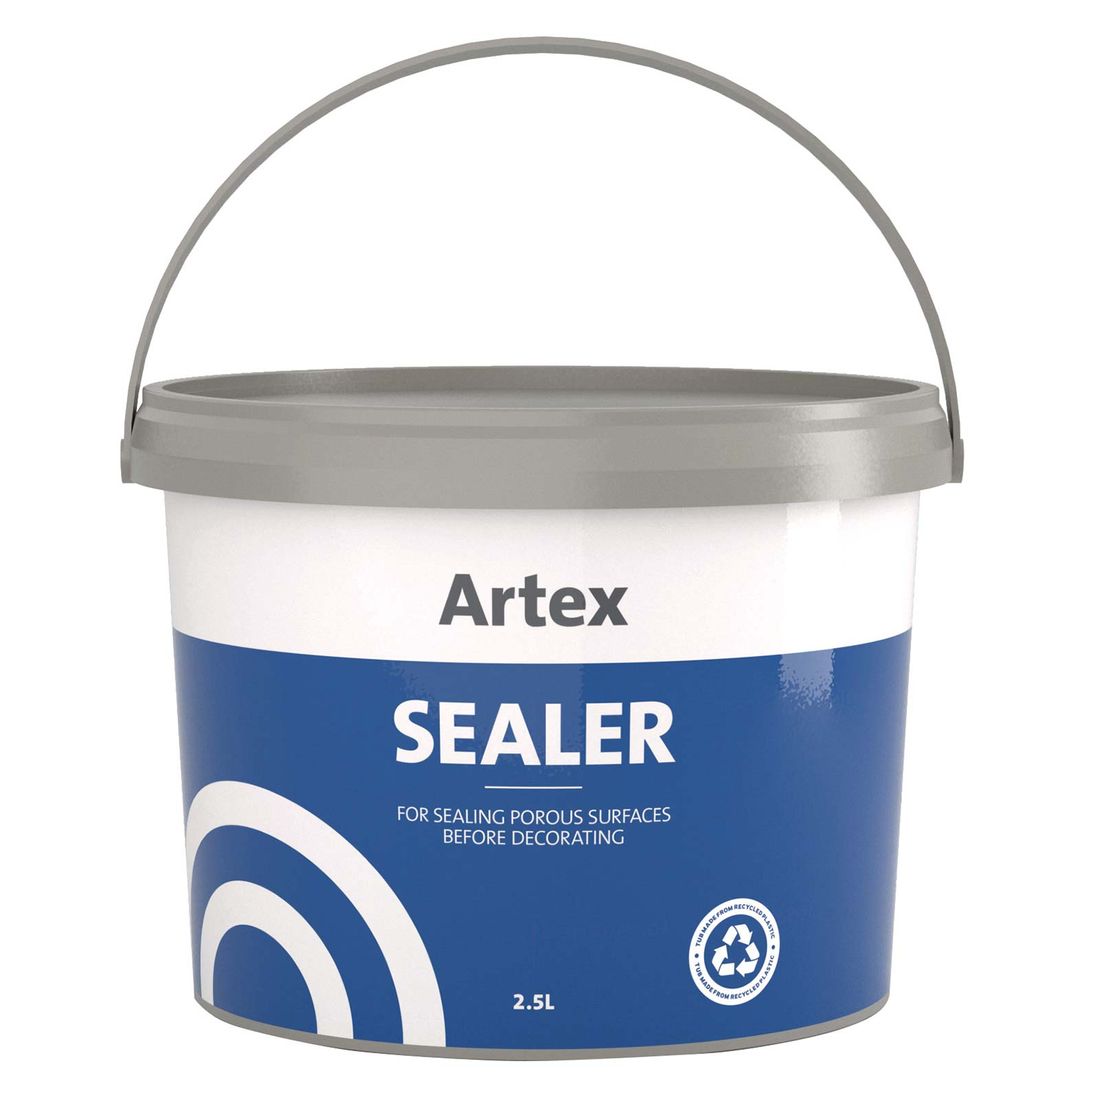 Artex Sealer 2.5L